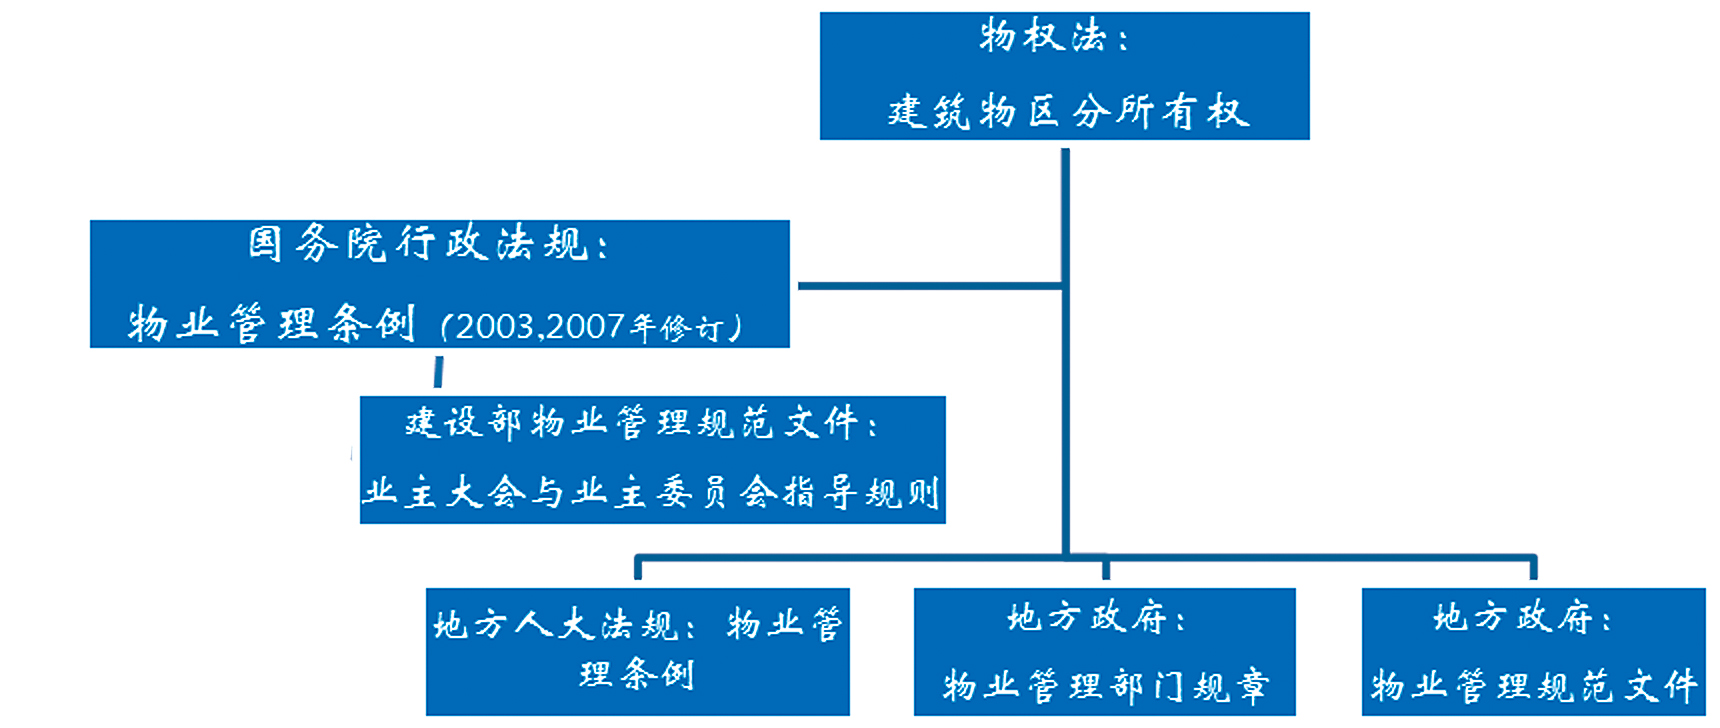 北京市物业管理立法的思路、实践与评估